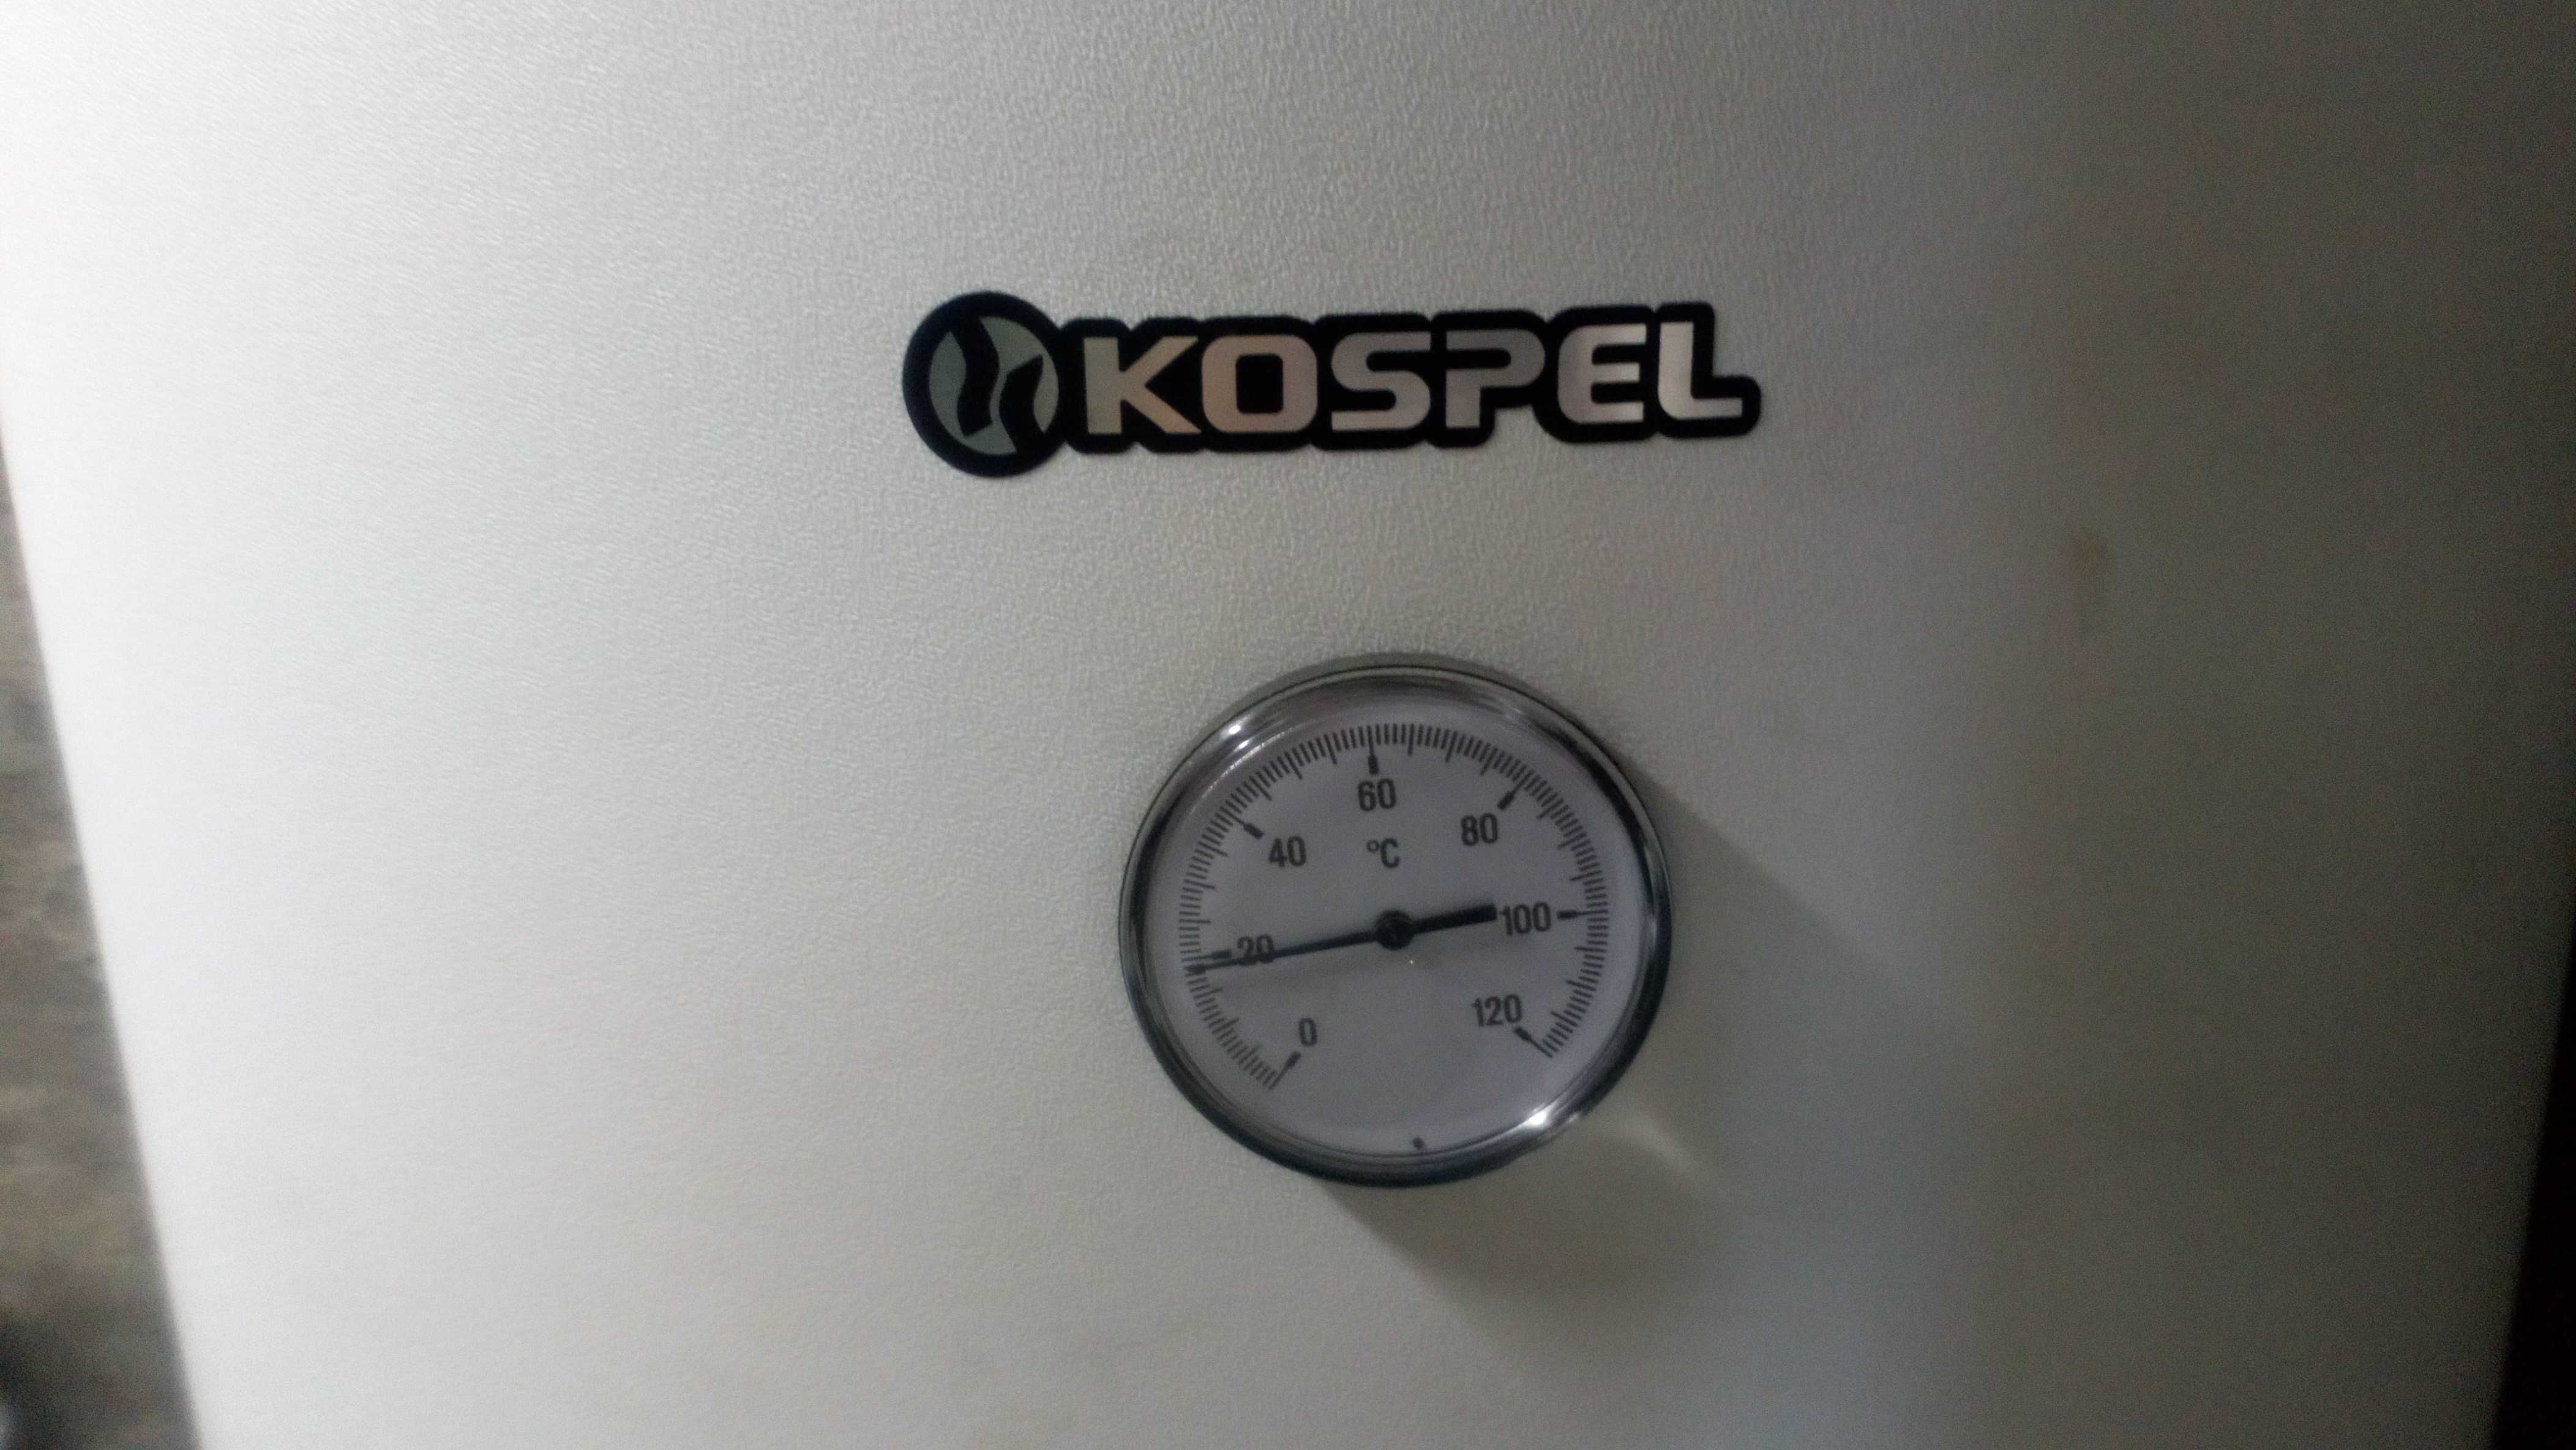 Sprzedam nowy z gwarancją bufor ciepła Kospel SWP-300 do pomp ciepła.